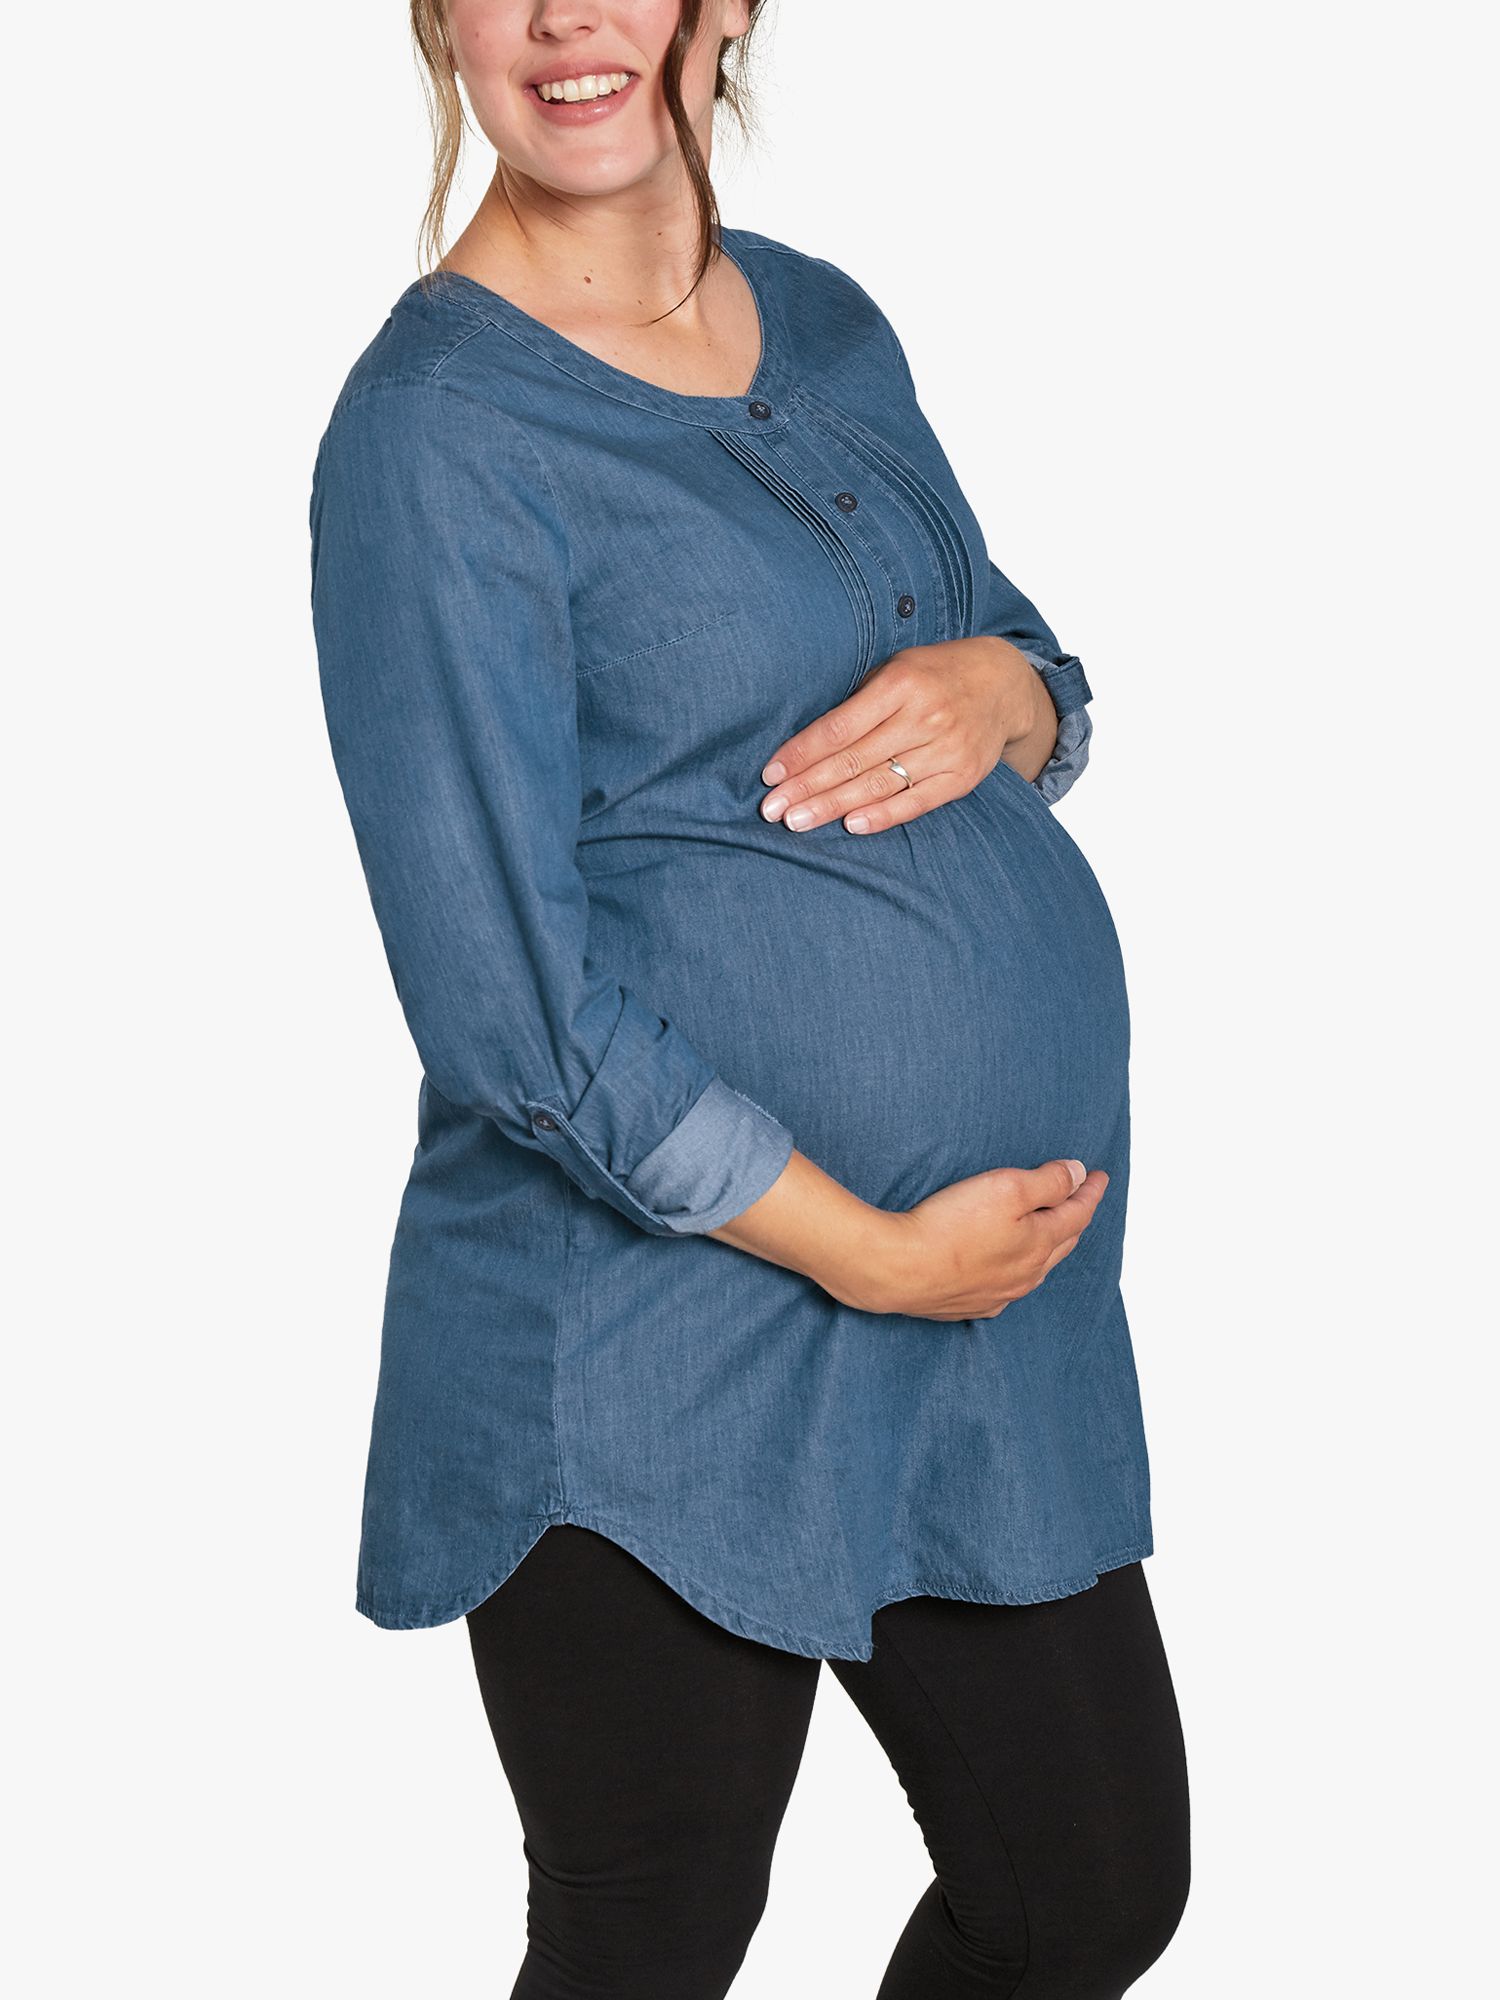 Джинсовая туника Roisin для беременных Frugi, синий туника для беременных 44 46 размер